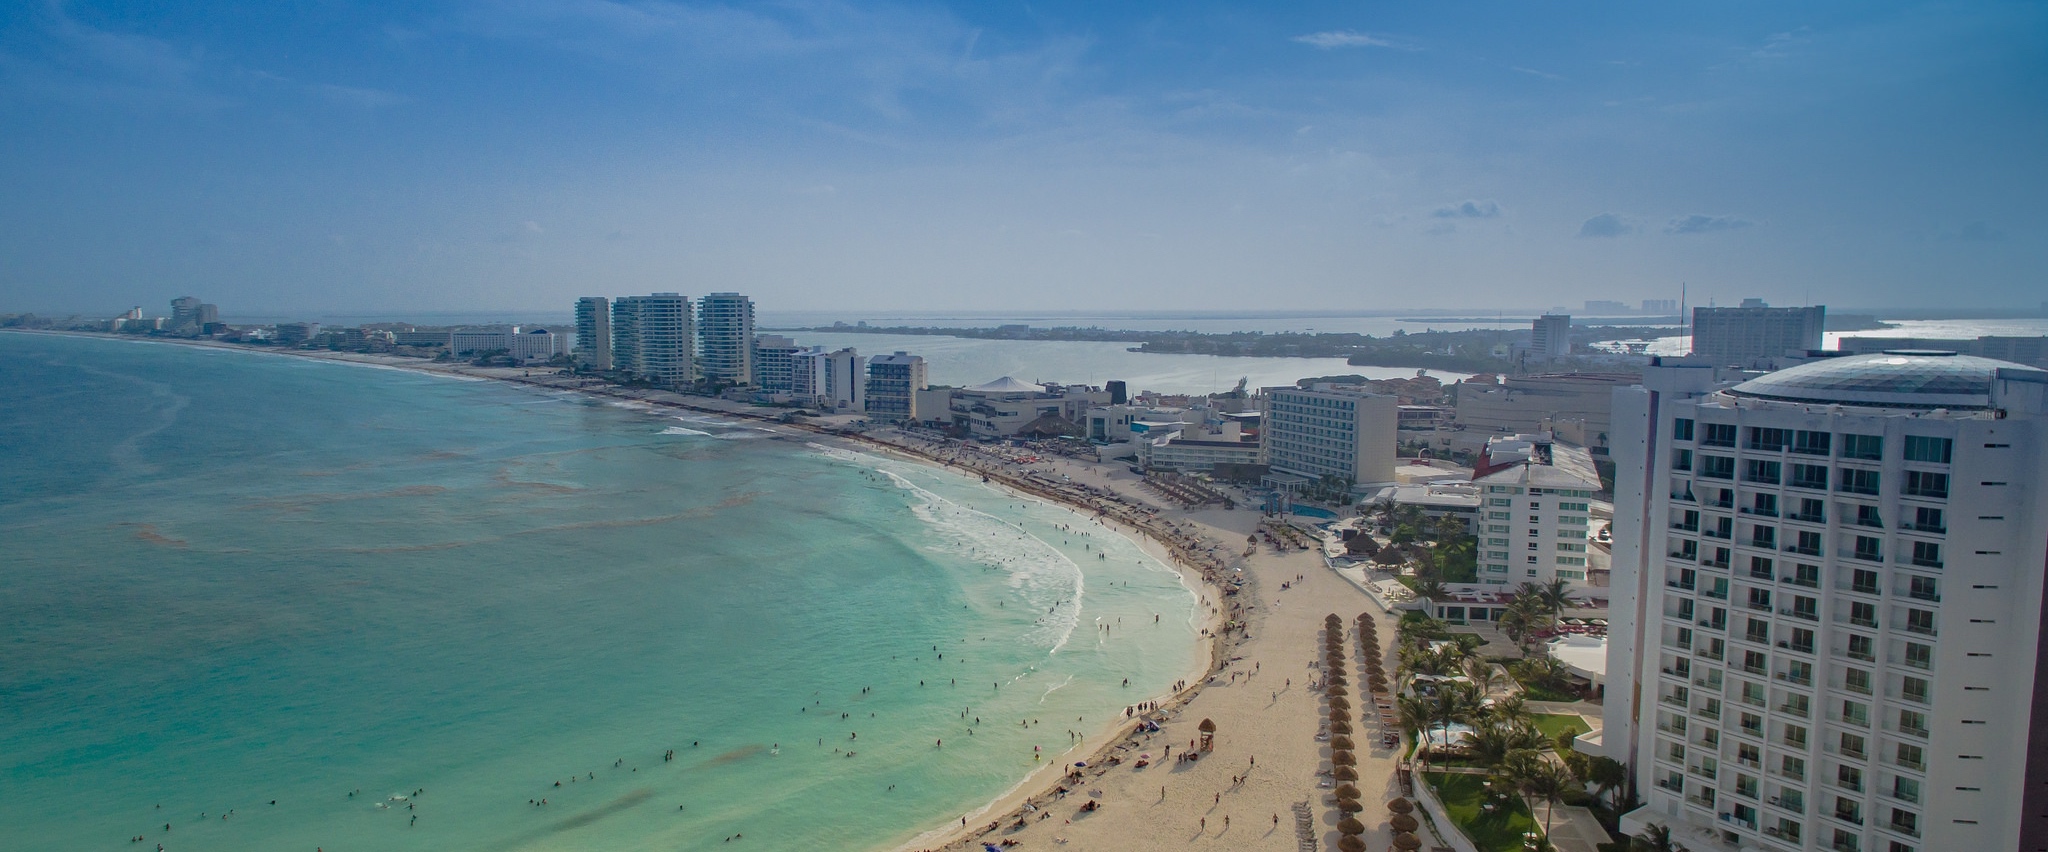 Virtual City Tour: Cancún